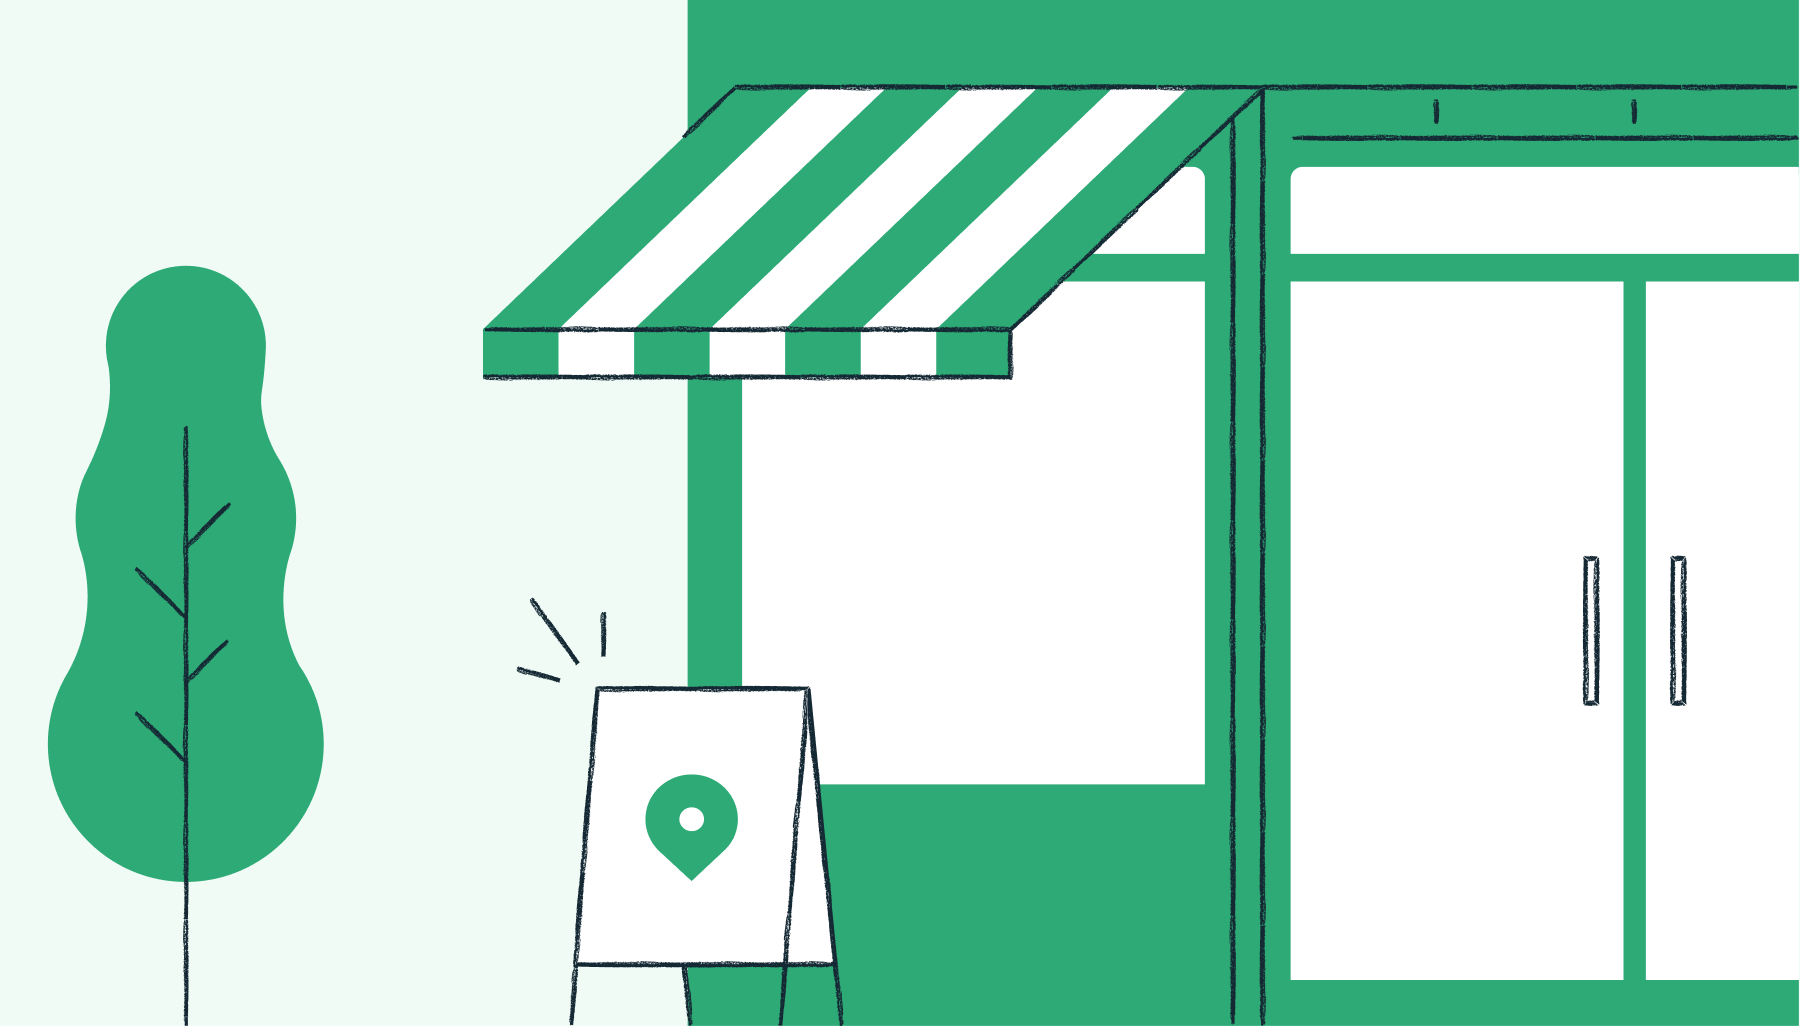 Comment un supermarché est passé au numérique durant la période de confinement